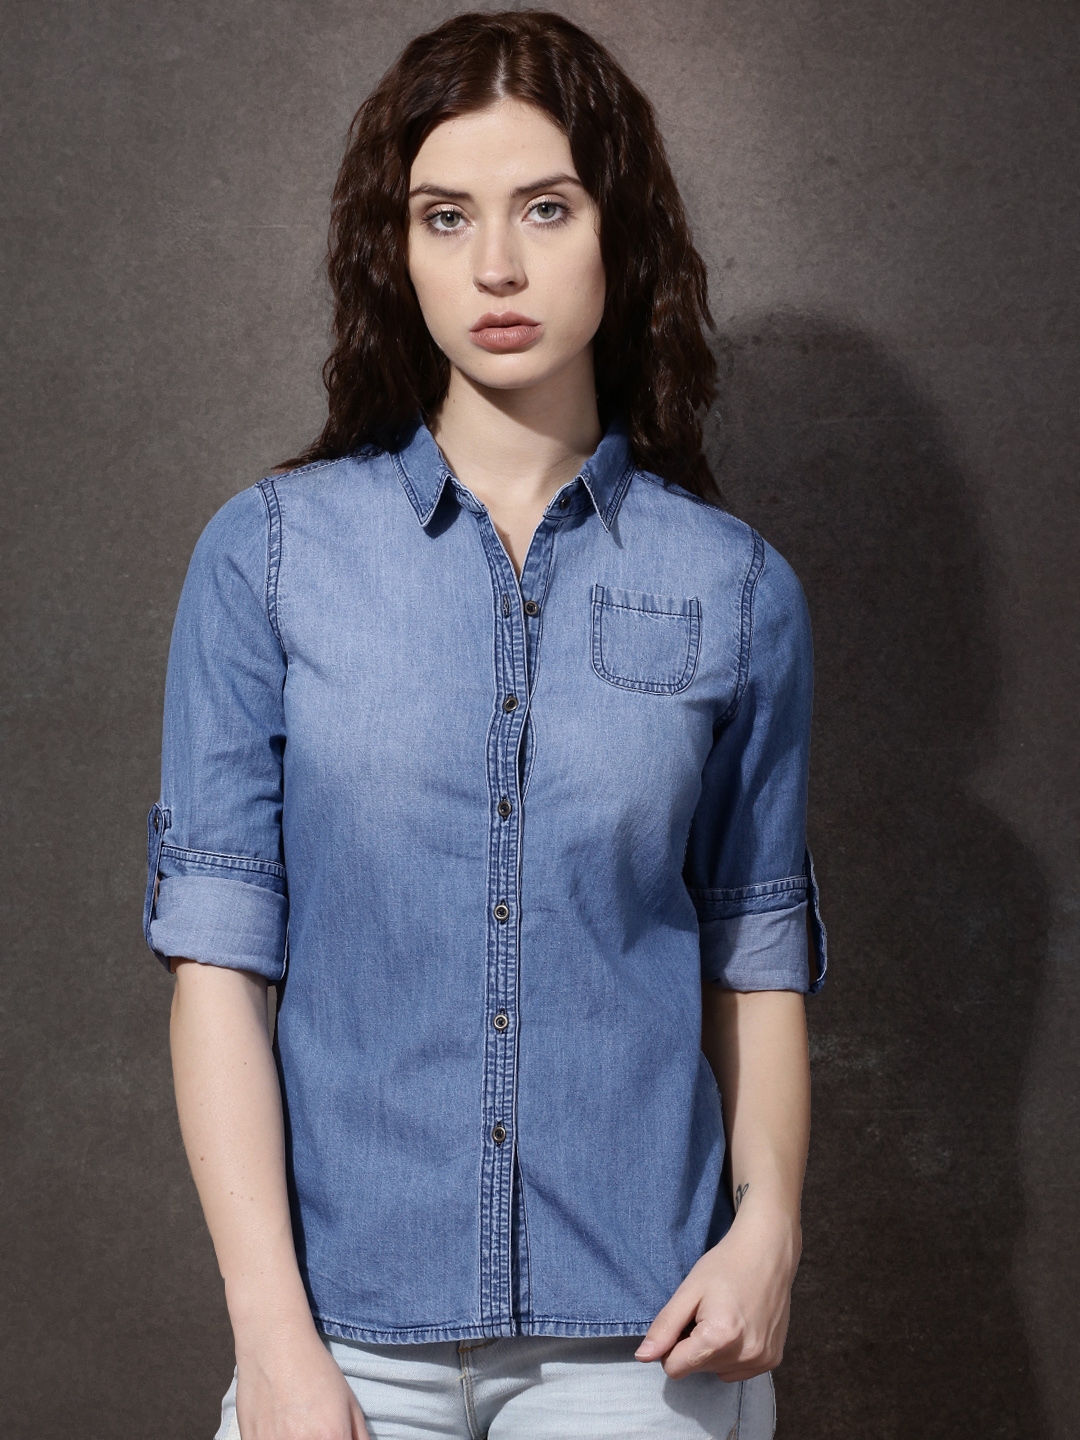 Buy Roadster Blue Washed Denim Casual Shirt - Shirts for Women 1113743 ...